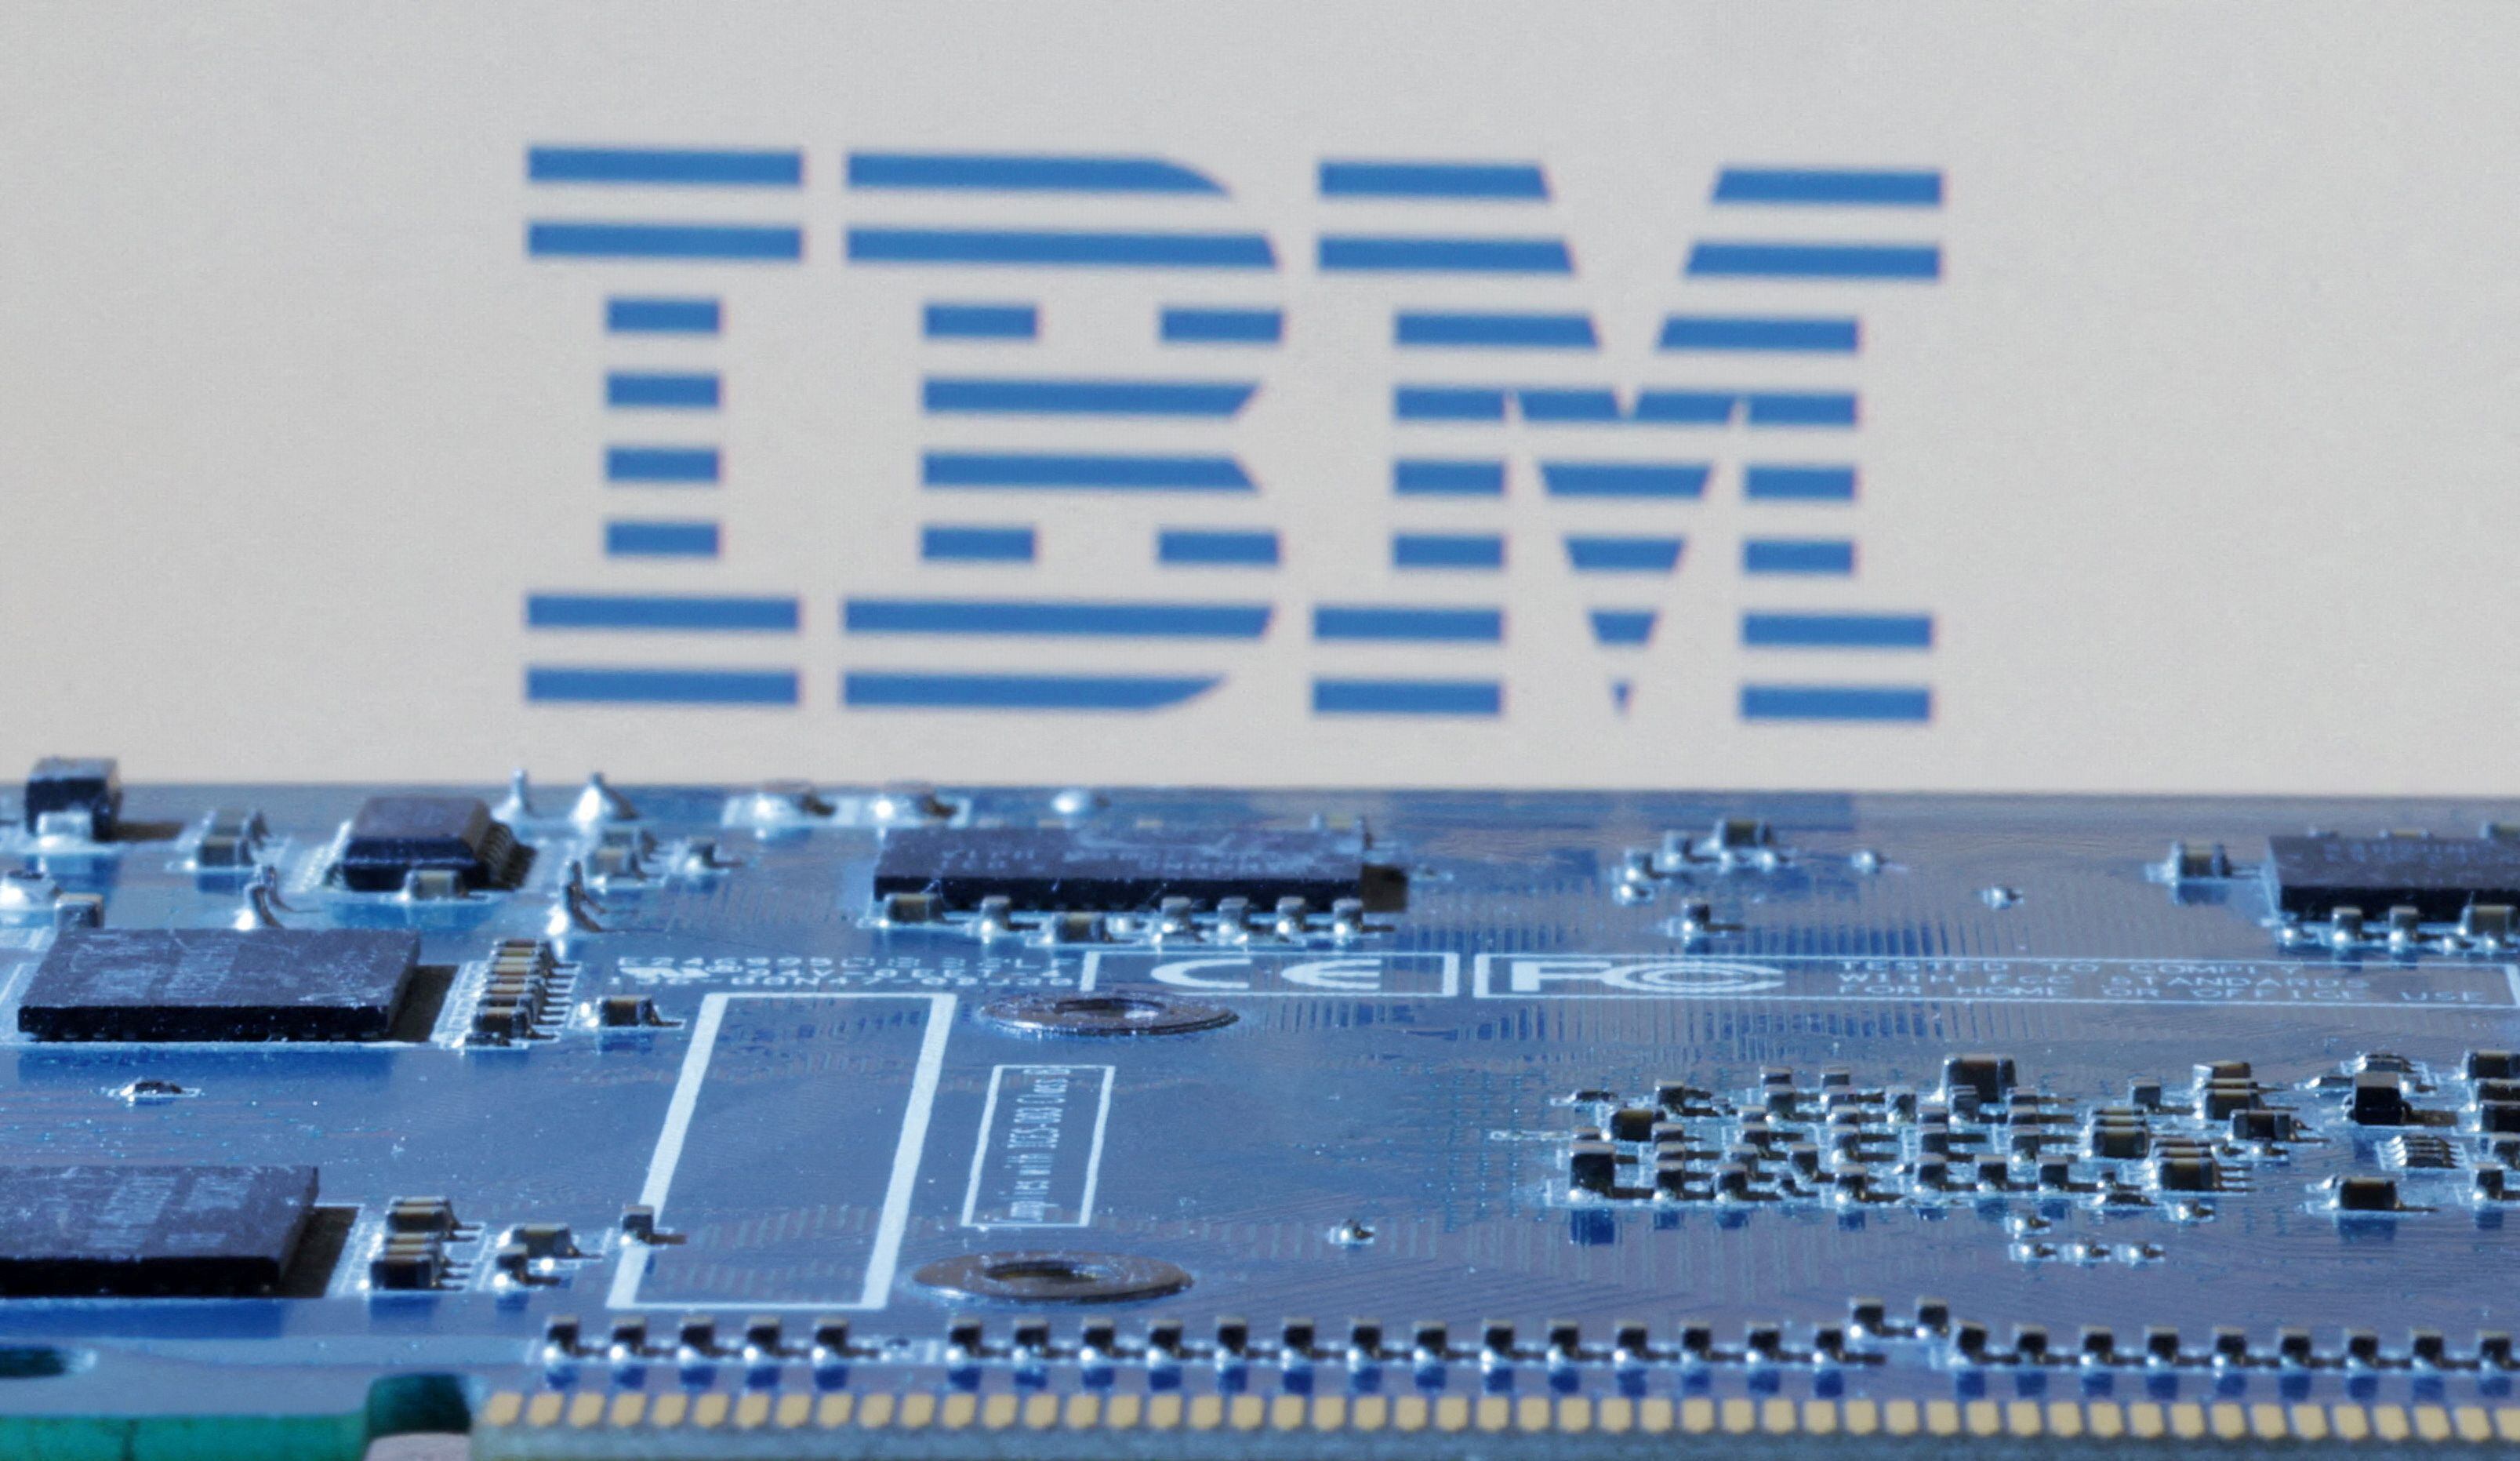 IBM colabora con la NASA en proyectos de IA. REUTERS/Dado Ruvic/Illustration/File Photo